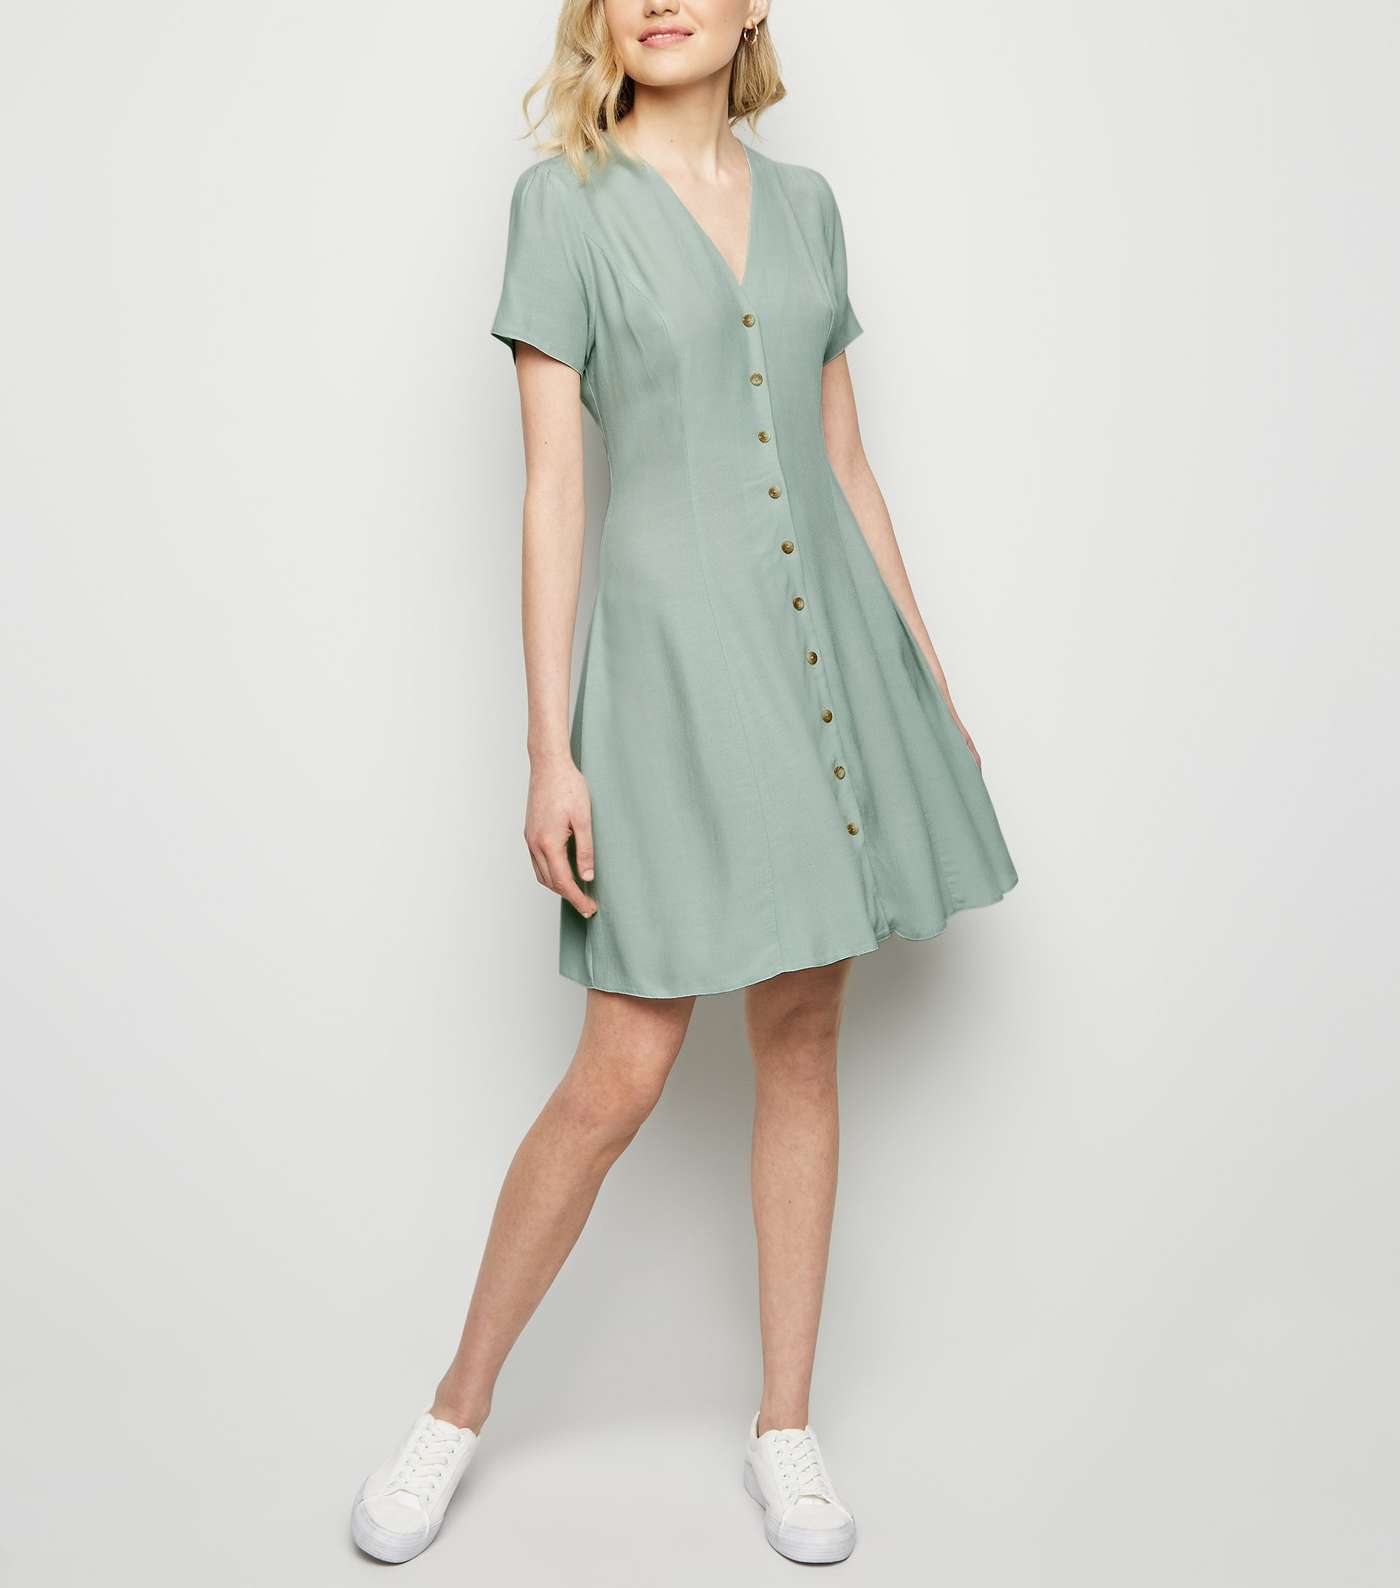 Mint Green Button Up Tea Dress Image 2